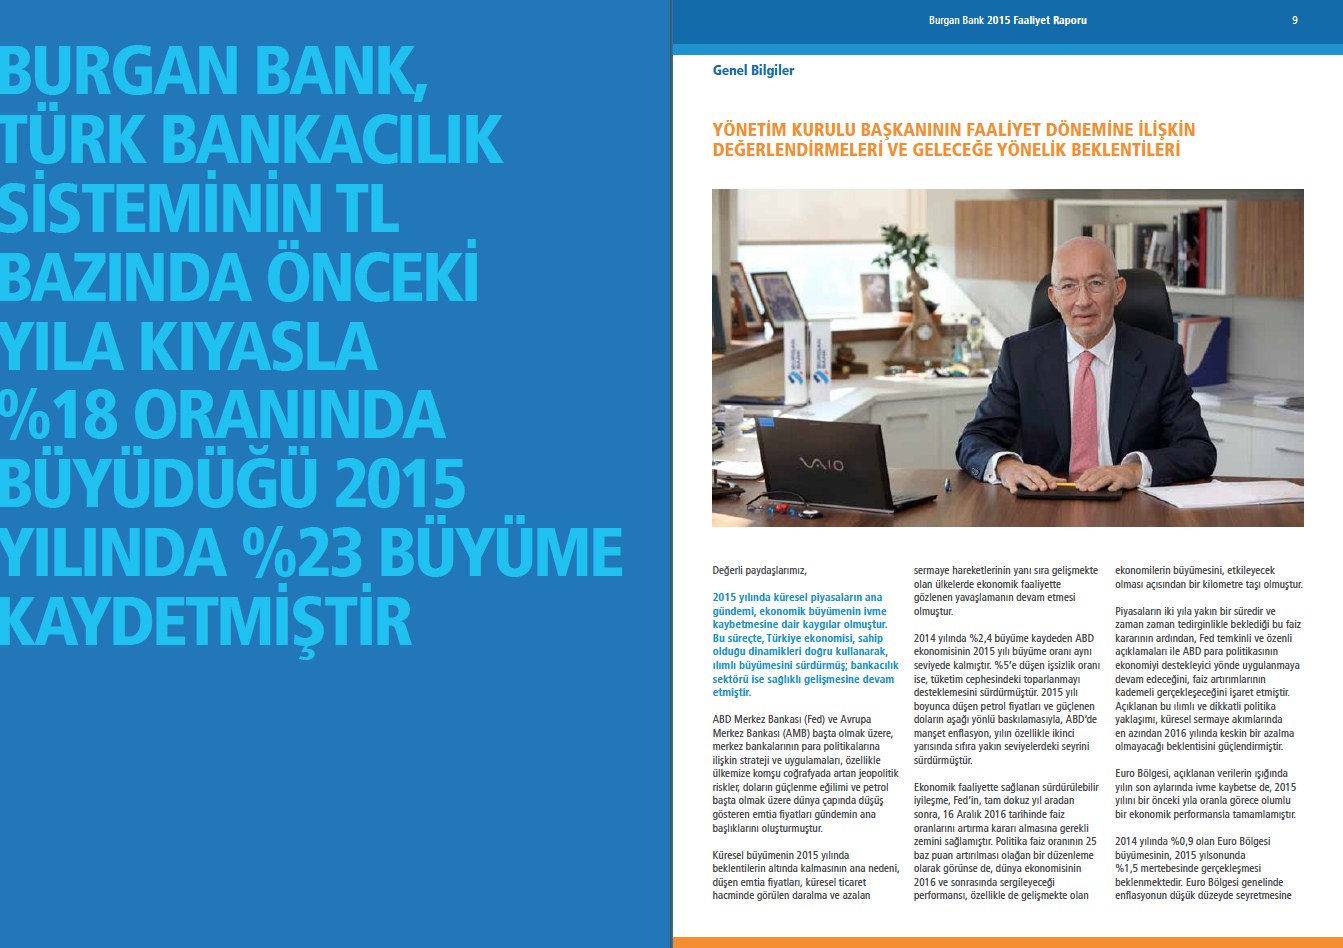 BURGAN BANK / 2015 Faaliyet Raporu / 2015 Annual Report